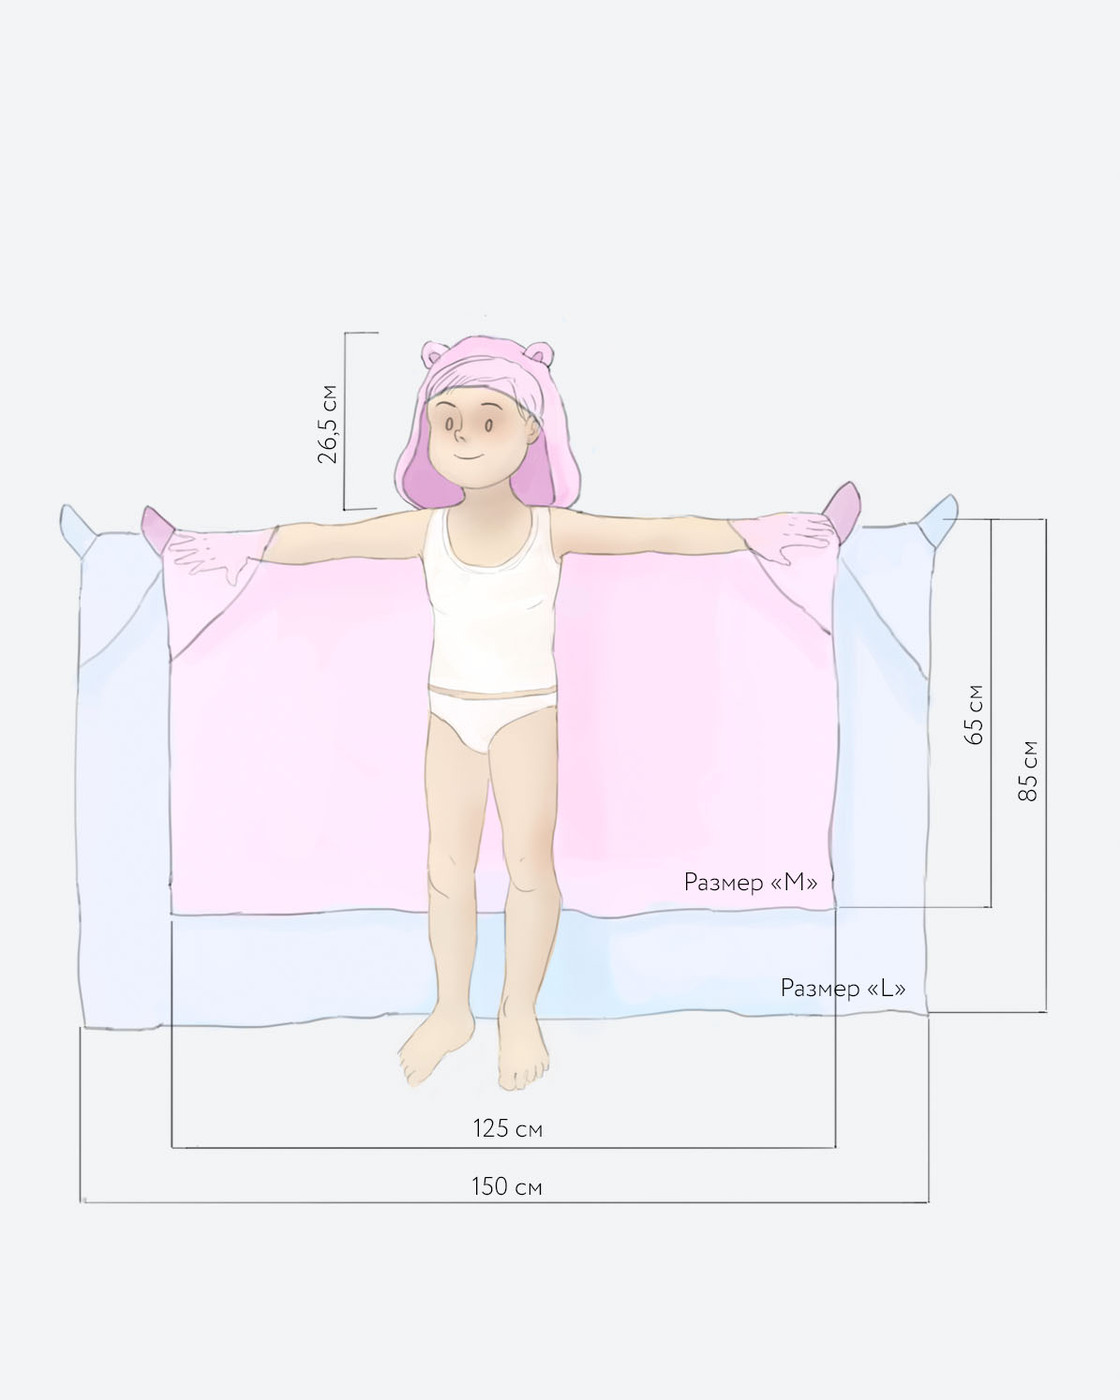 Выкройка полотенца. Полотенце уголок детский Размеры. Полотенце с капюшоном для детей выкройка. Полотенце уголок детское выкройка. Полотенце для новорожденных.